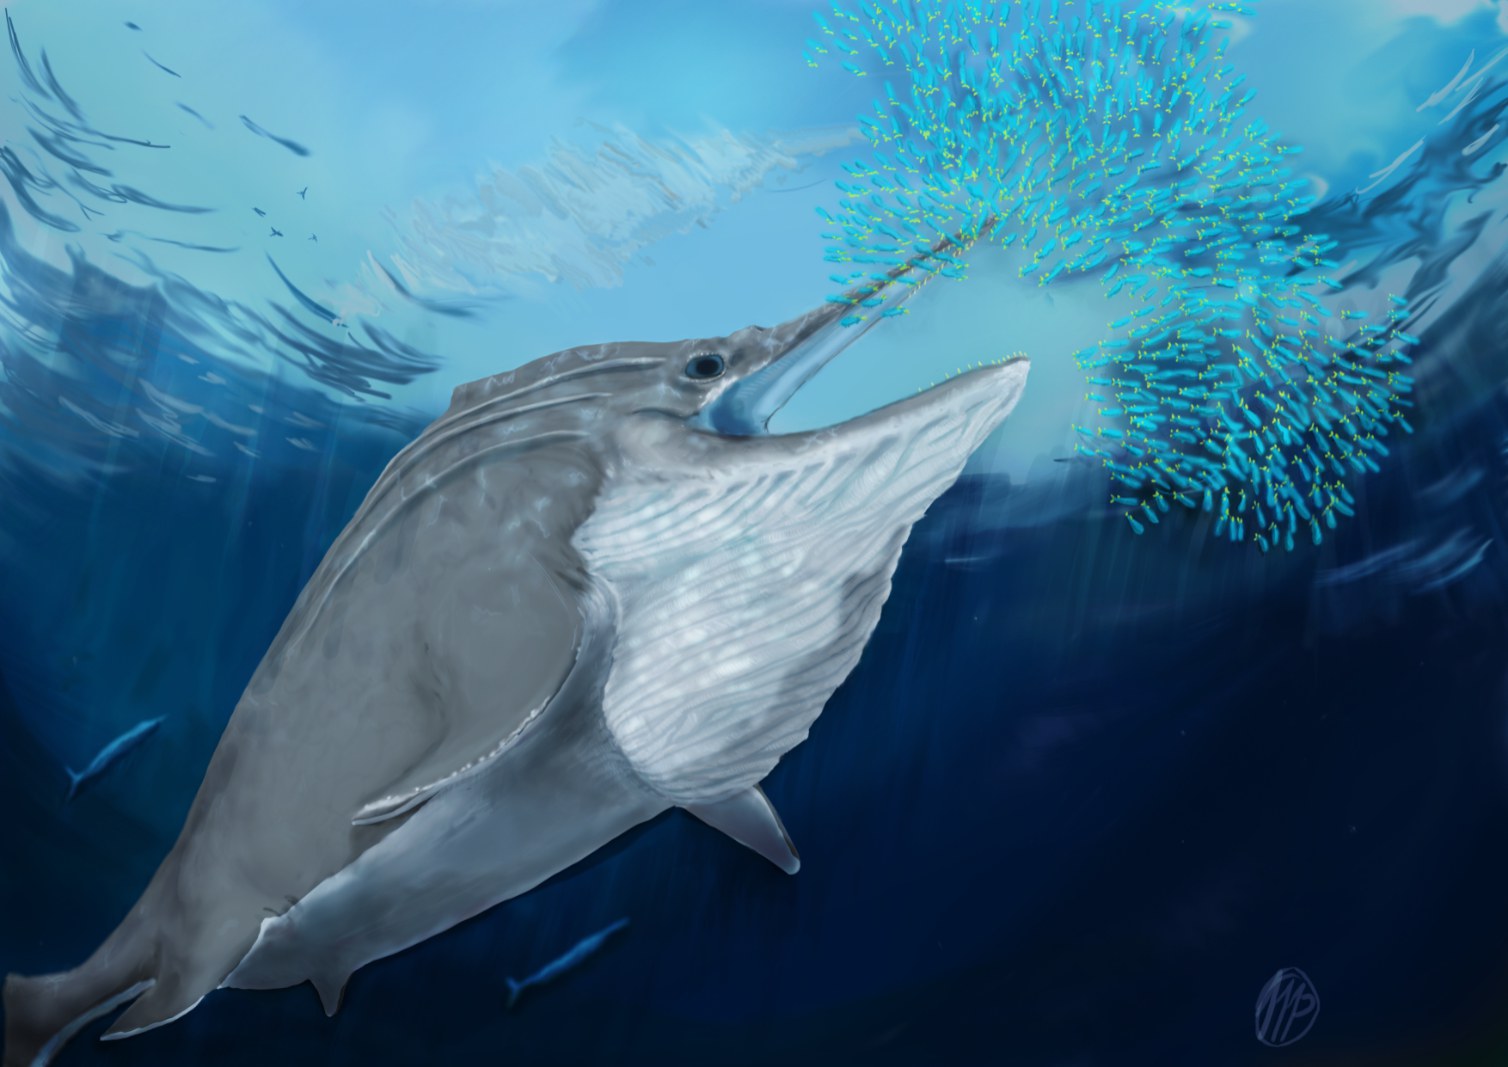 Lebendrekonstruktion eines riesigen Ichthyosauriers aus der späten Trias, der sich von einem Tintenfischschwarm ernährt.